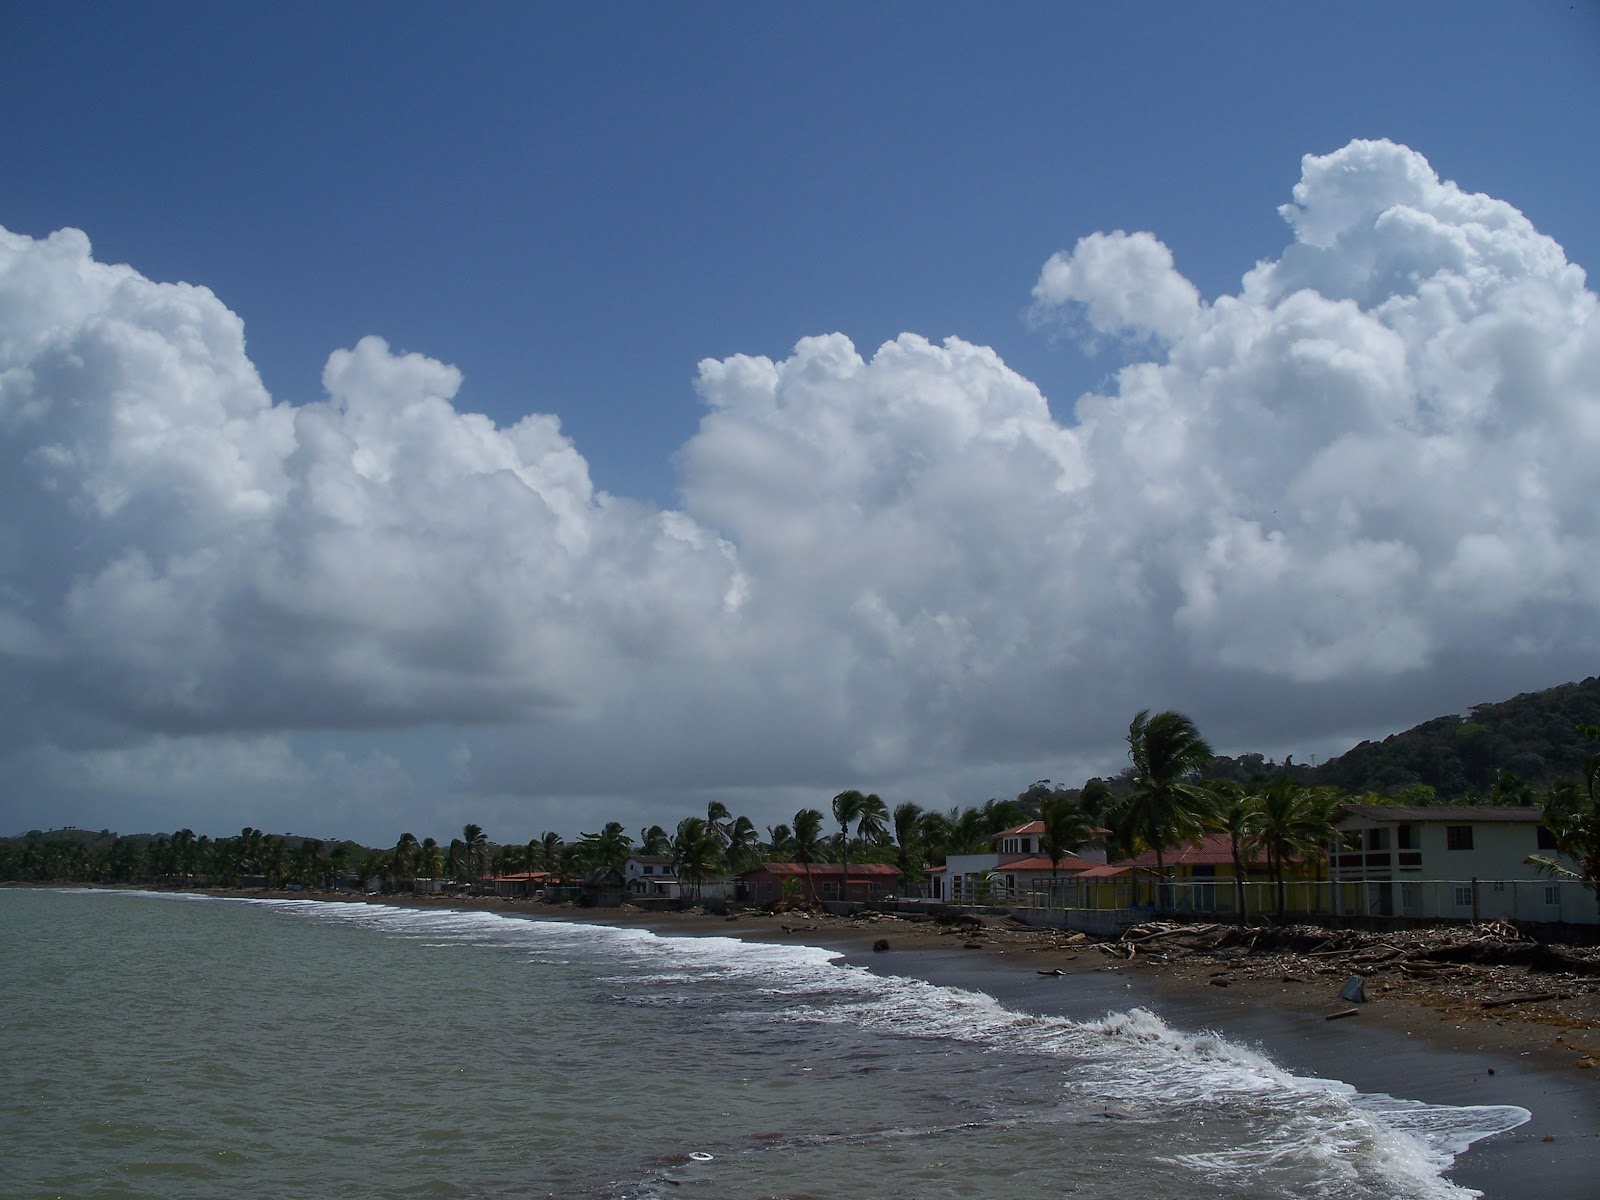 Zdjęcie Nombre Dios Beach - popularne miejsce wśród znawców relaksu